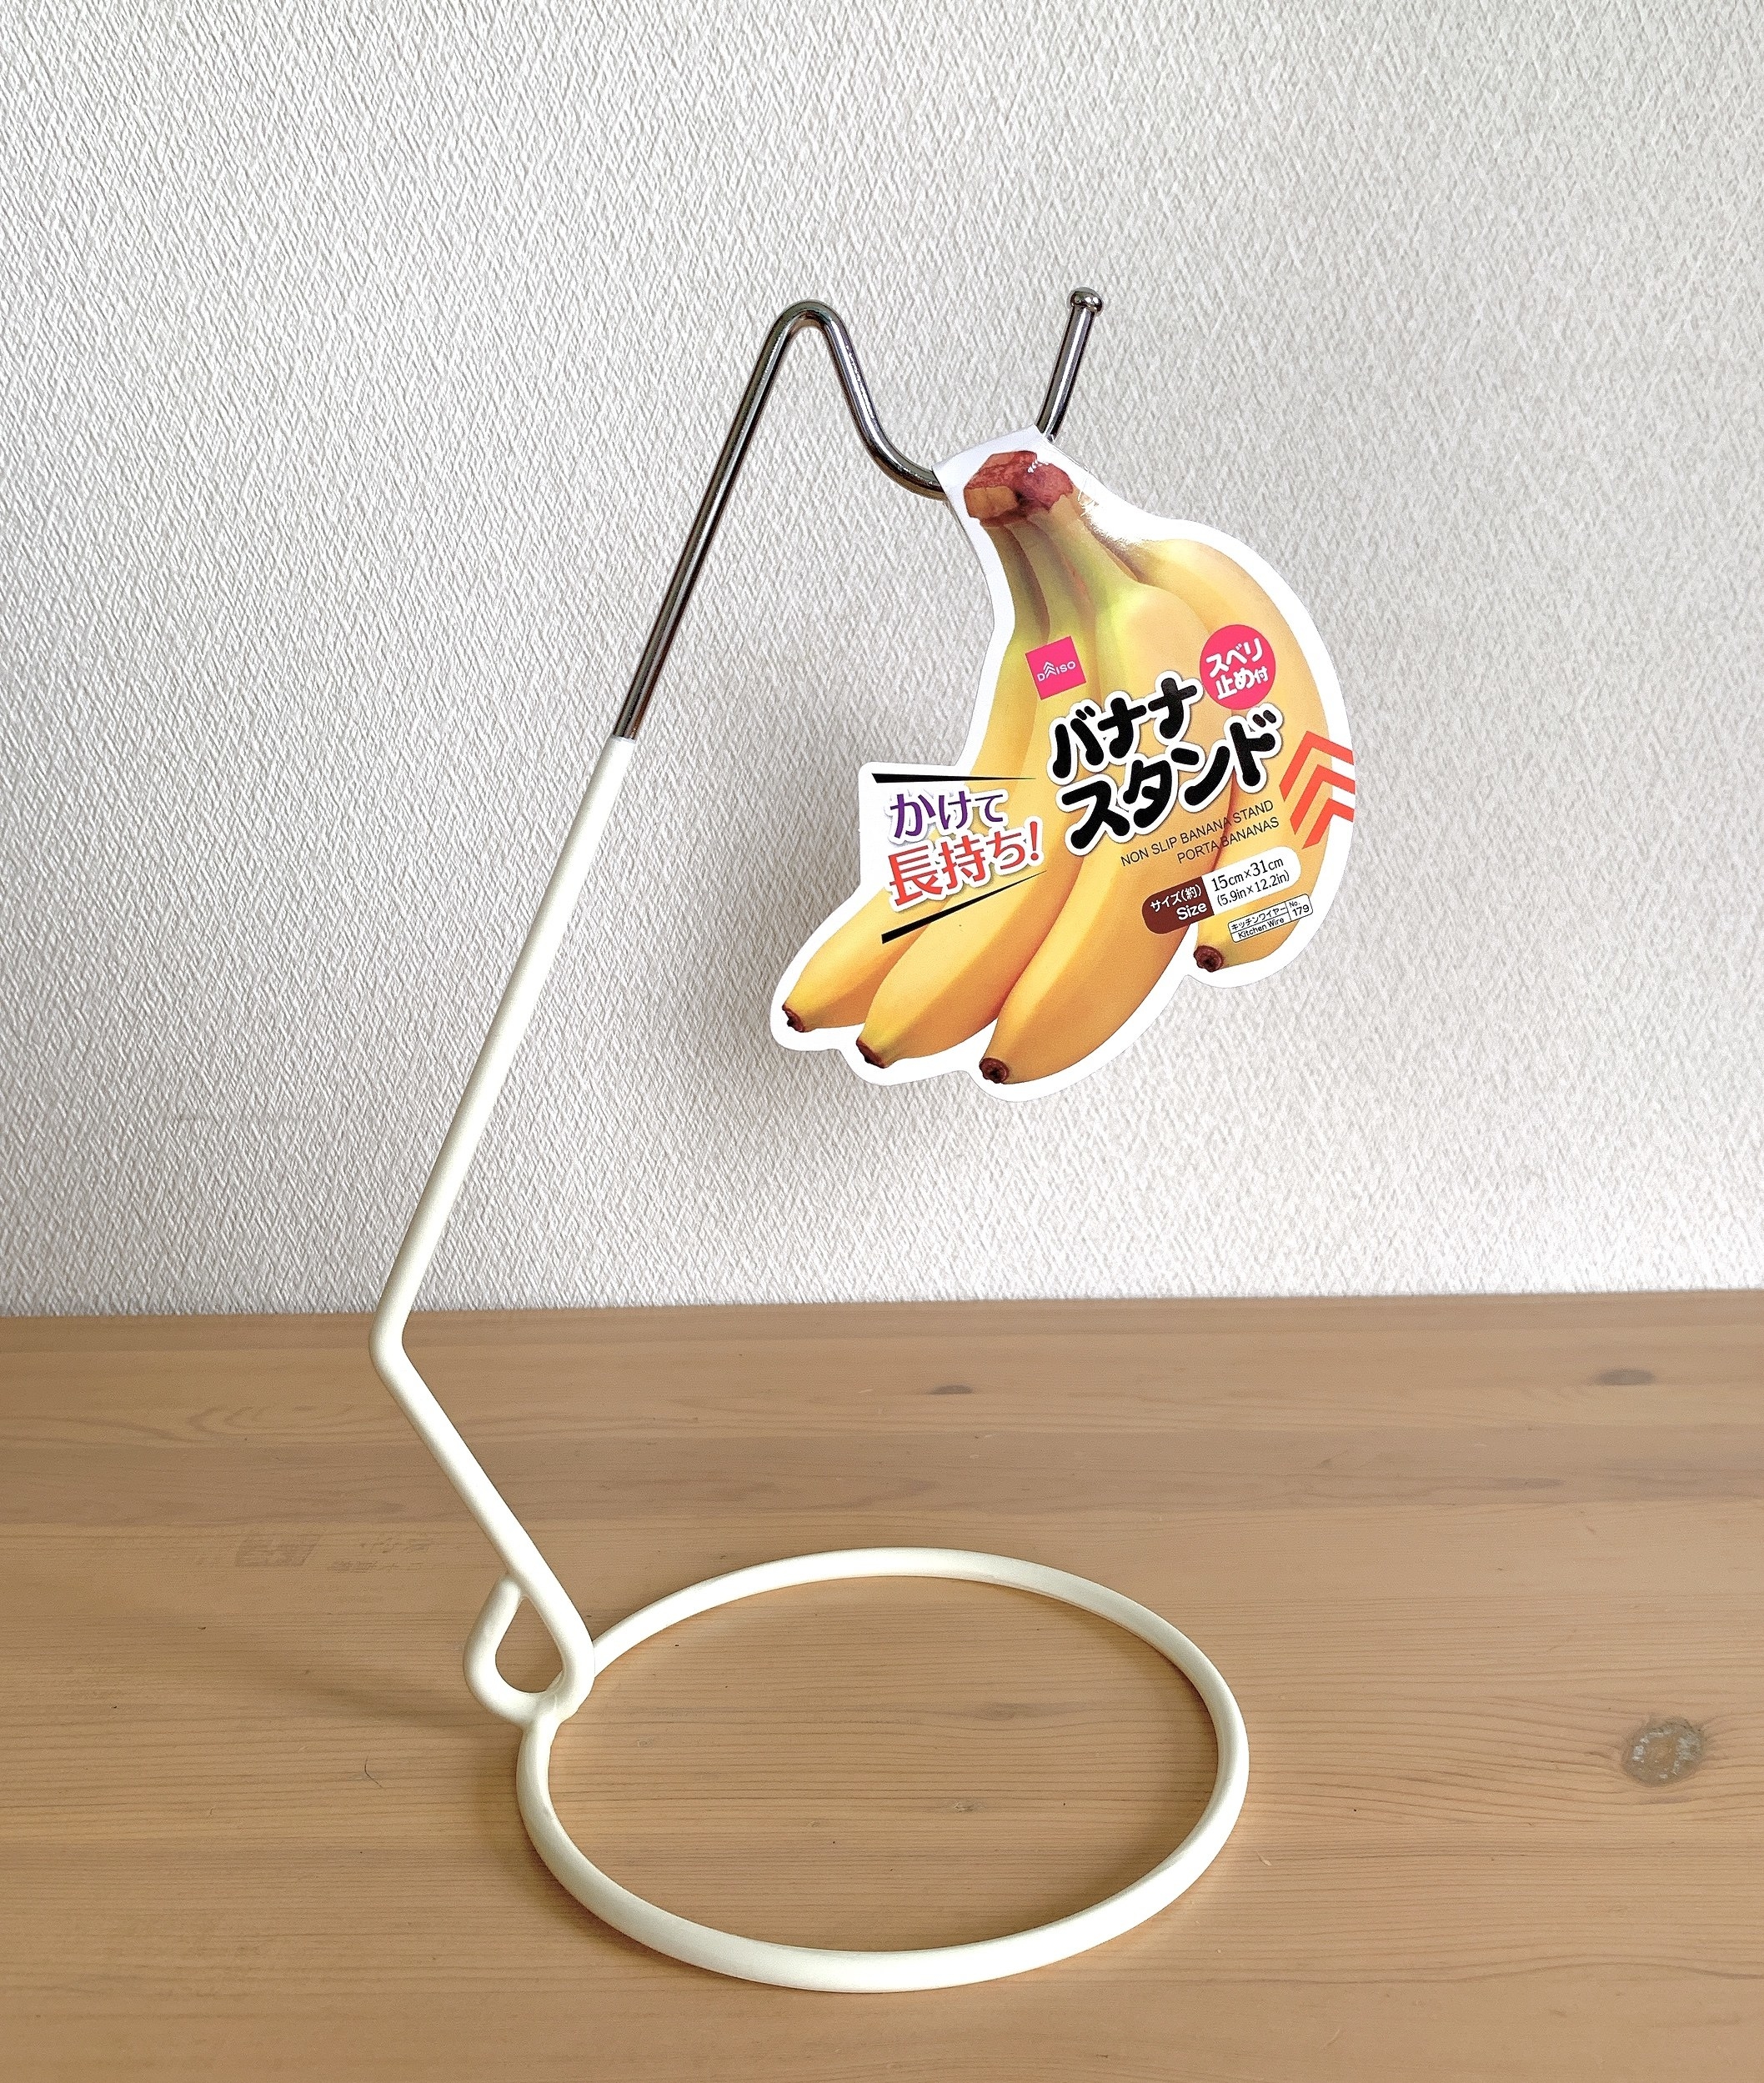 これは発明だわ ダイソーの 吊るすスタンド がバナナの保存にめっちゃ便利